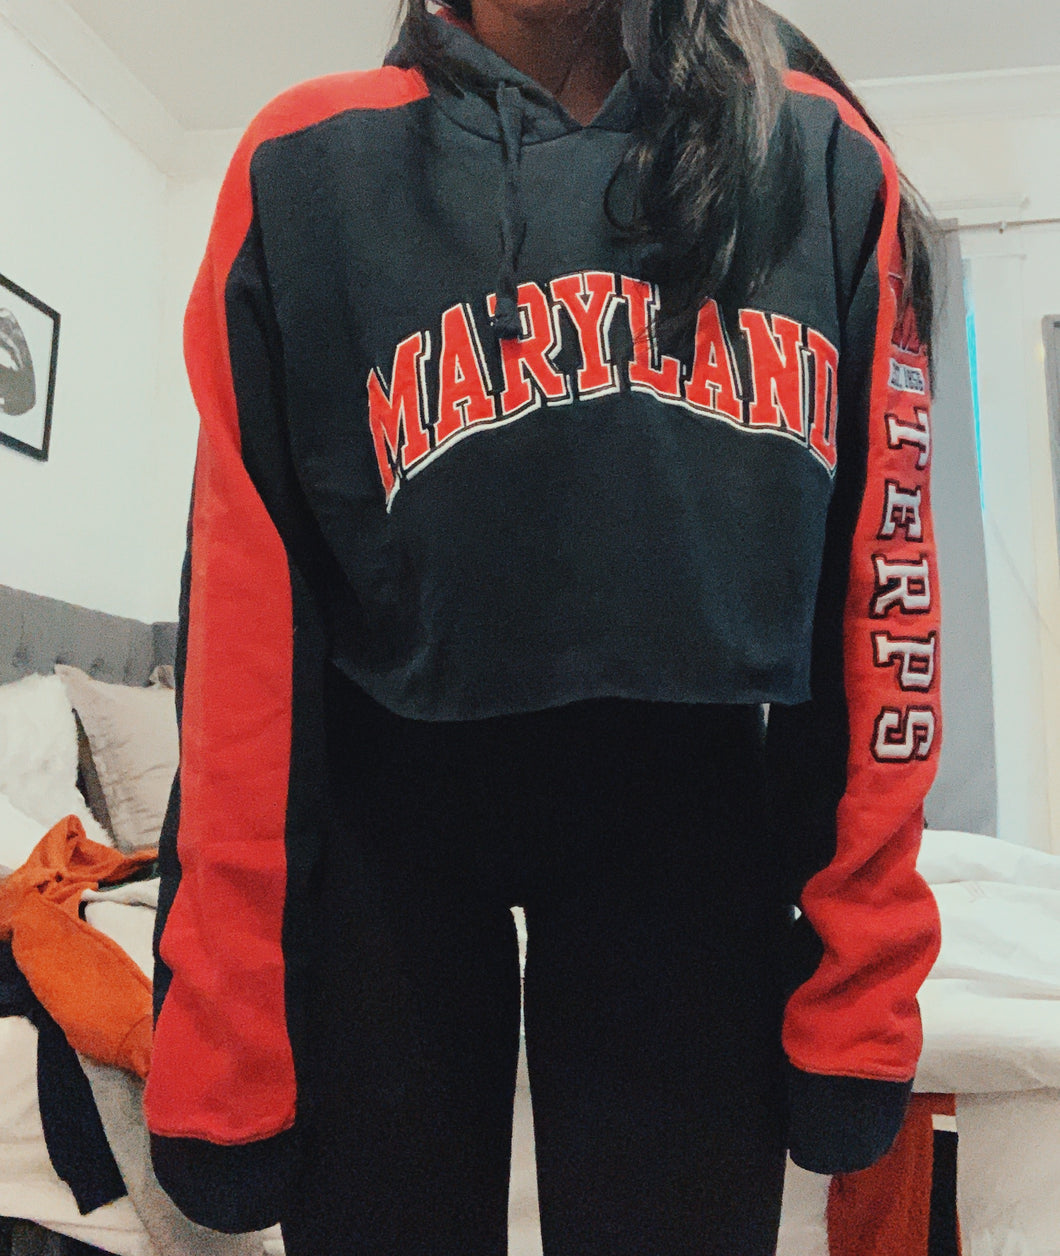 Maryland Vintage Sweatshirt